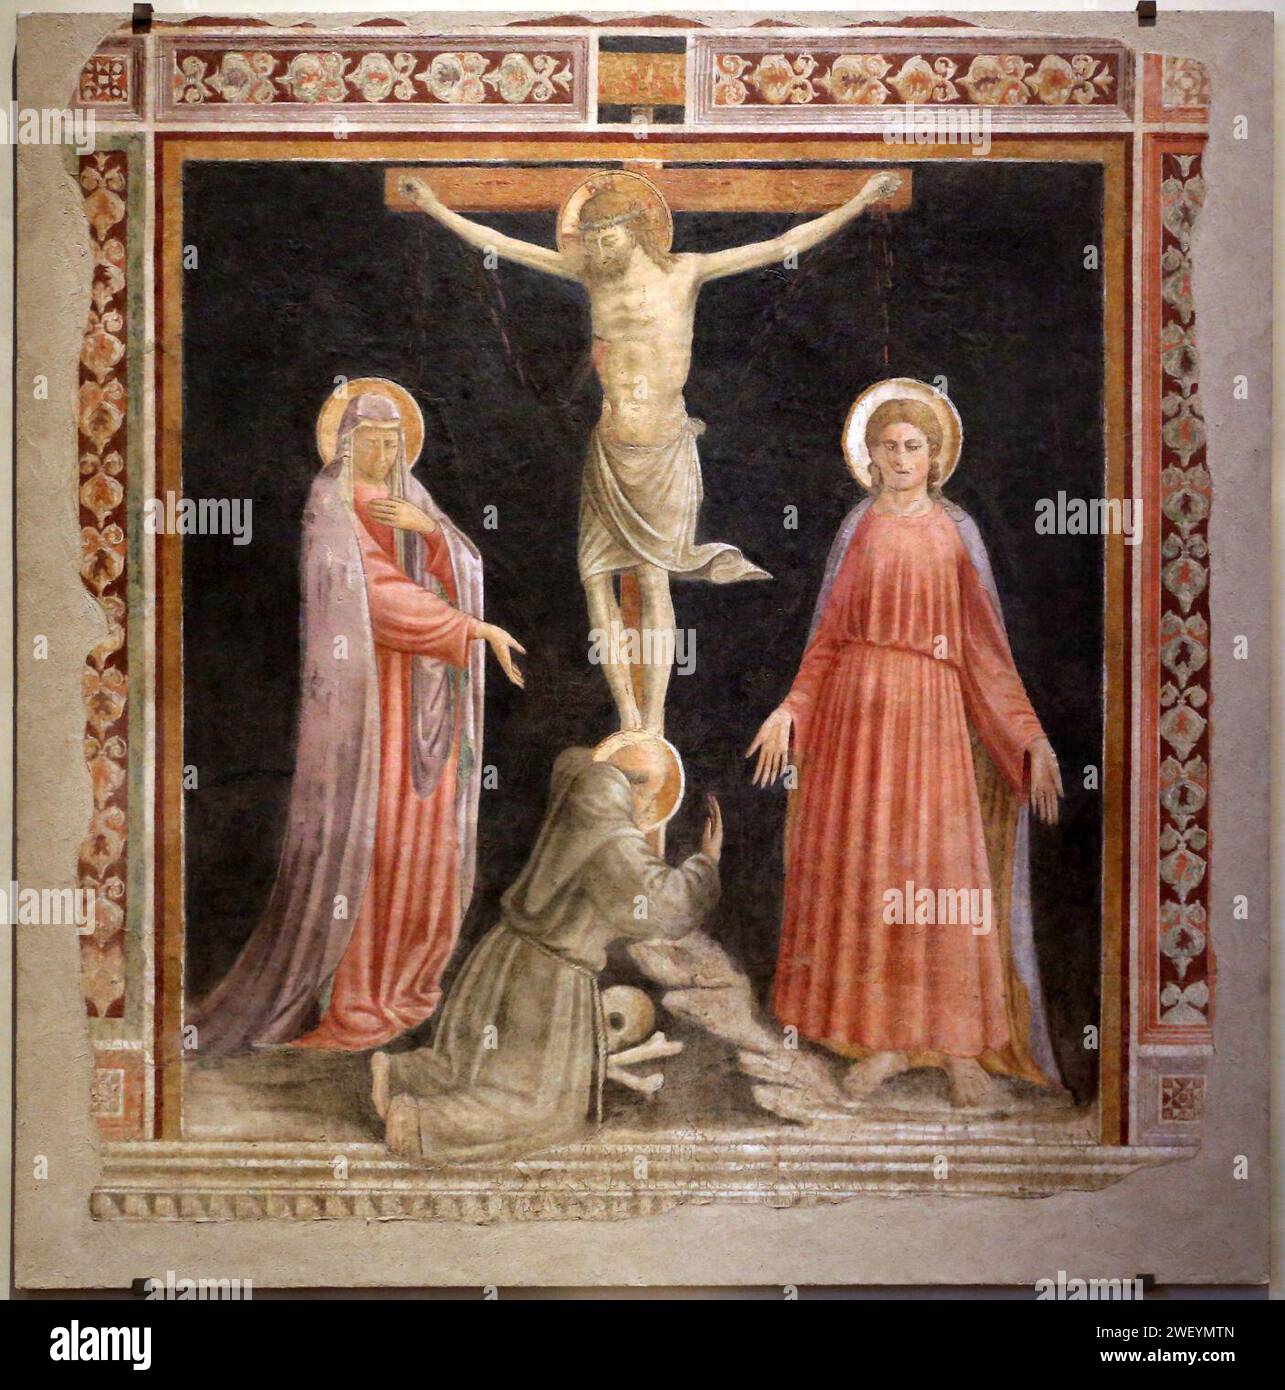 Andrea di giusto, crocifissione coi dolenti e san francesco, 1425-50 ca., dal secondo chiostro. Stock Photo